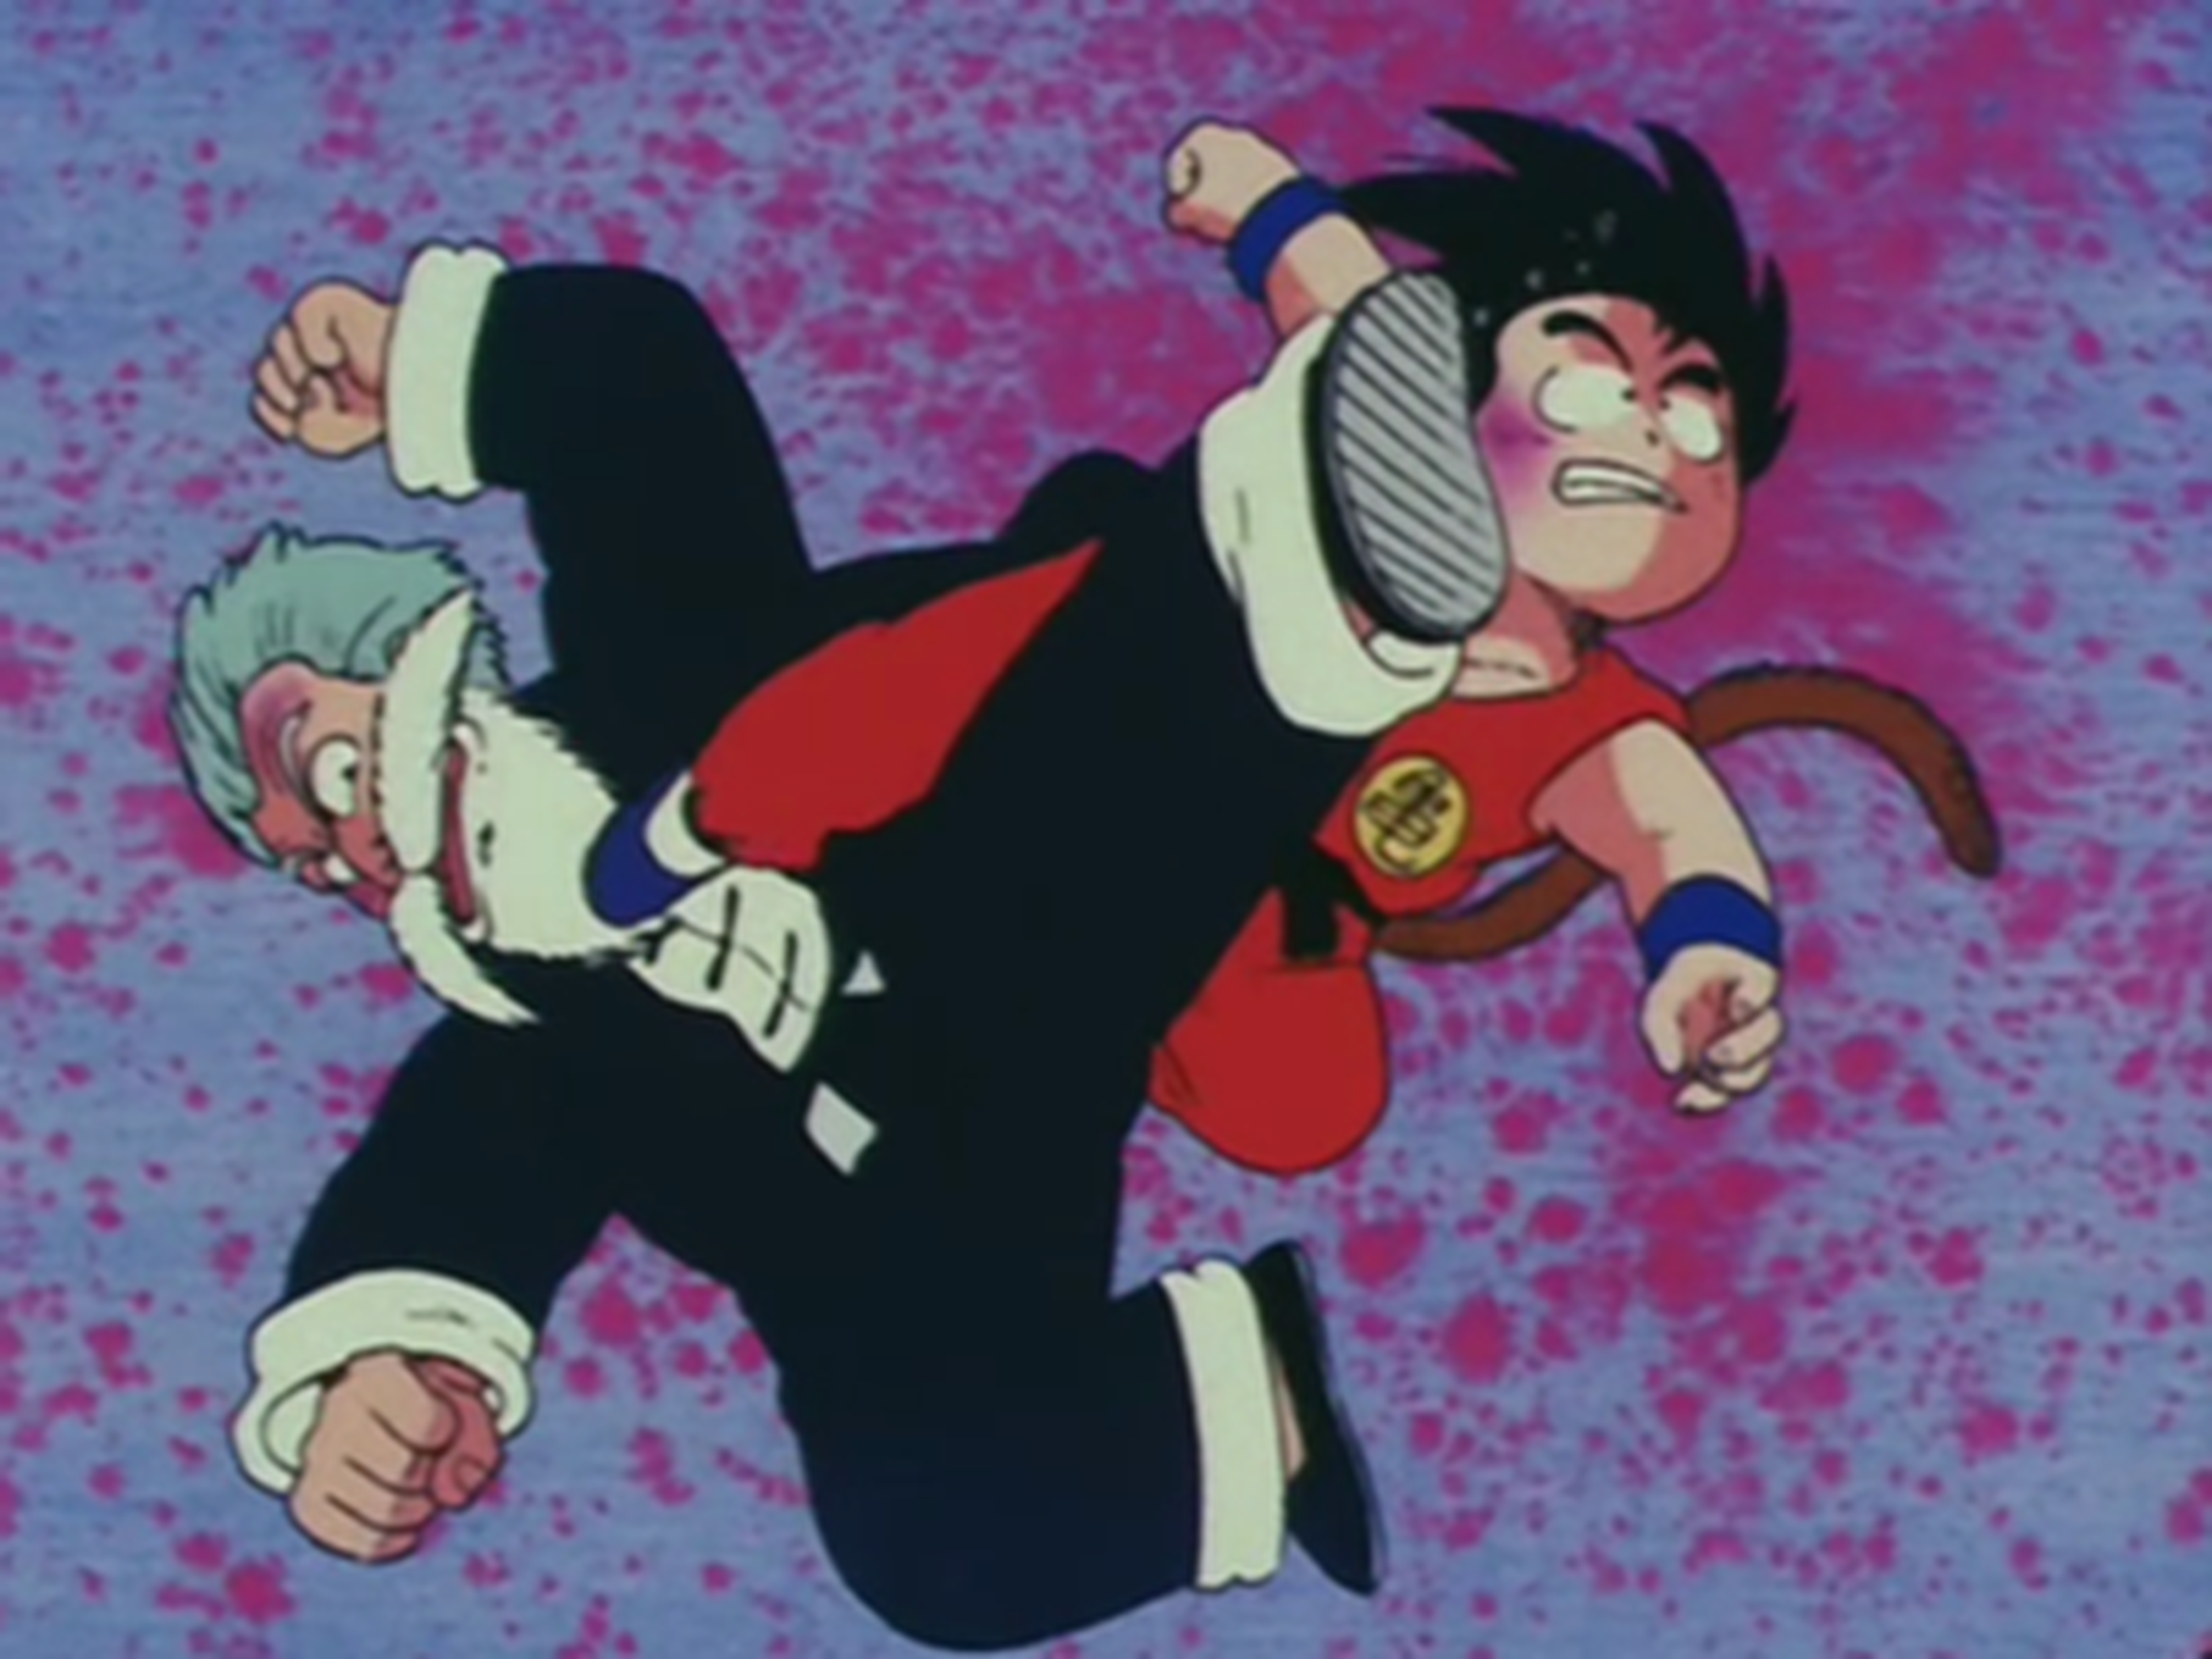 Dragon Ball - Jackie Chun vs Goku